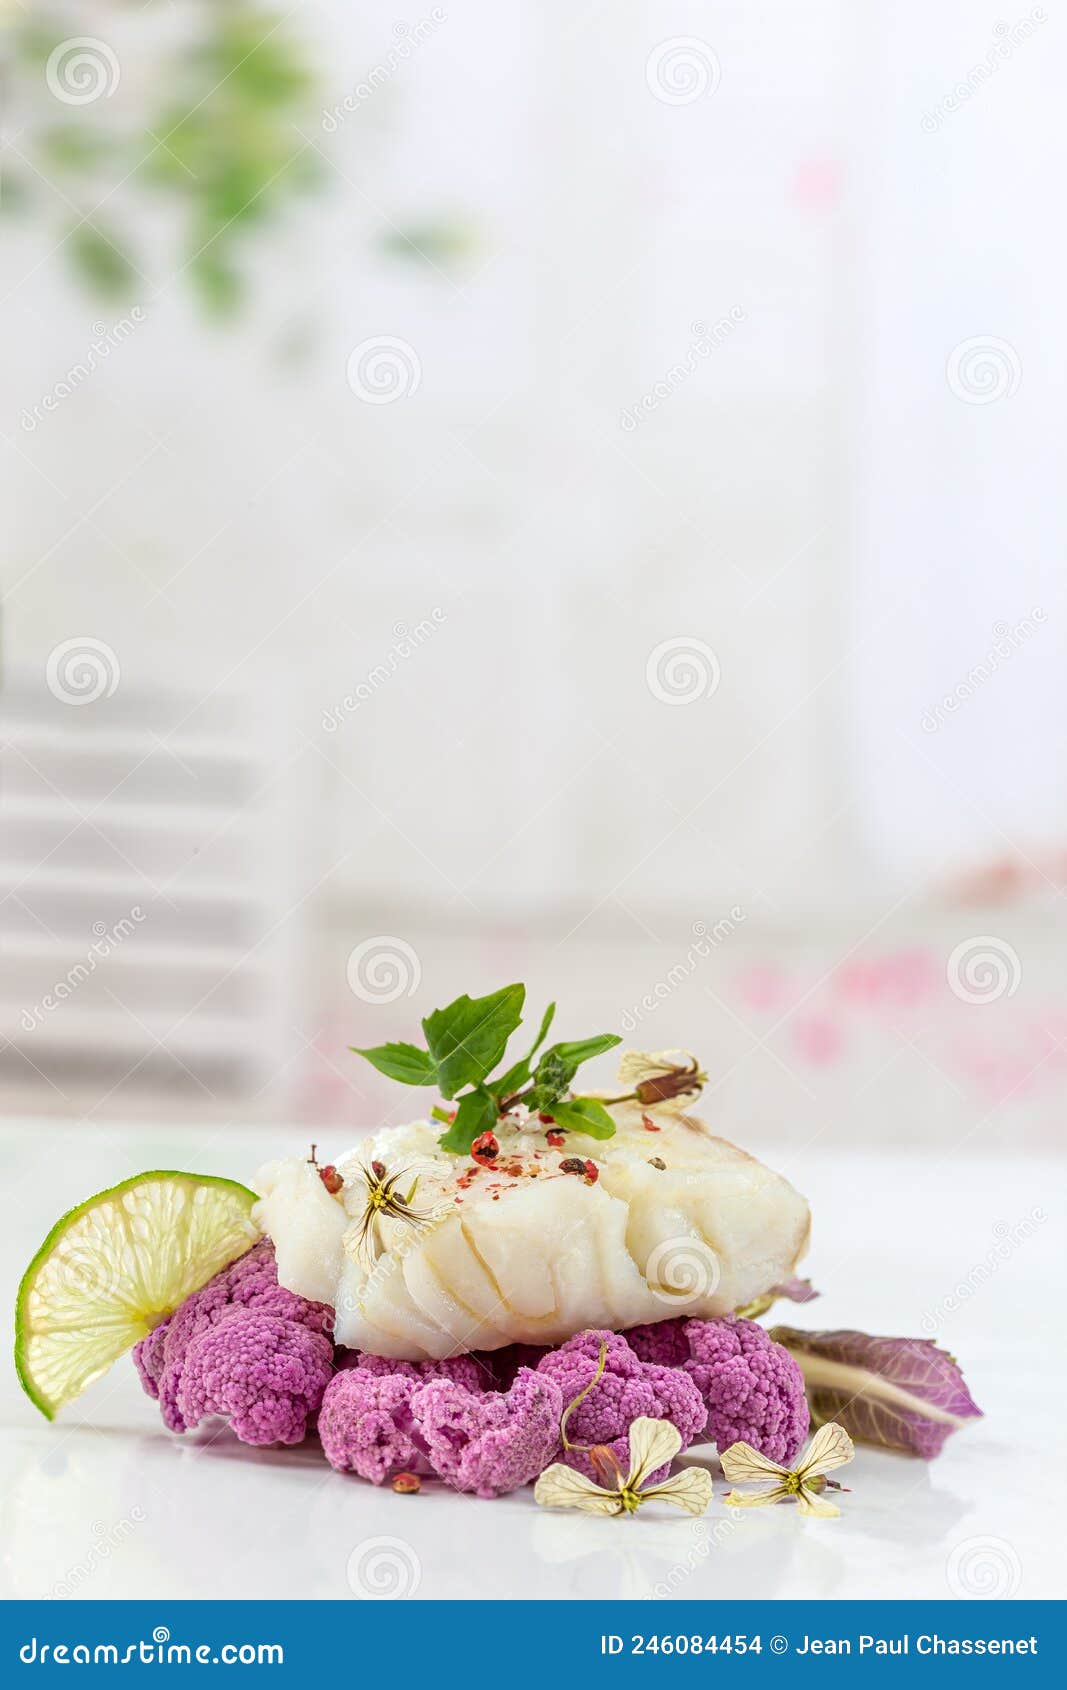 cod steak steam with purple coliflower on lightbackground